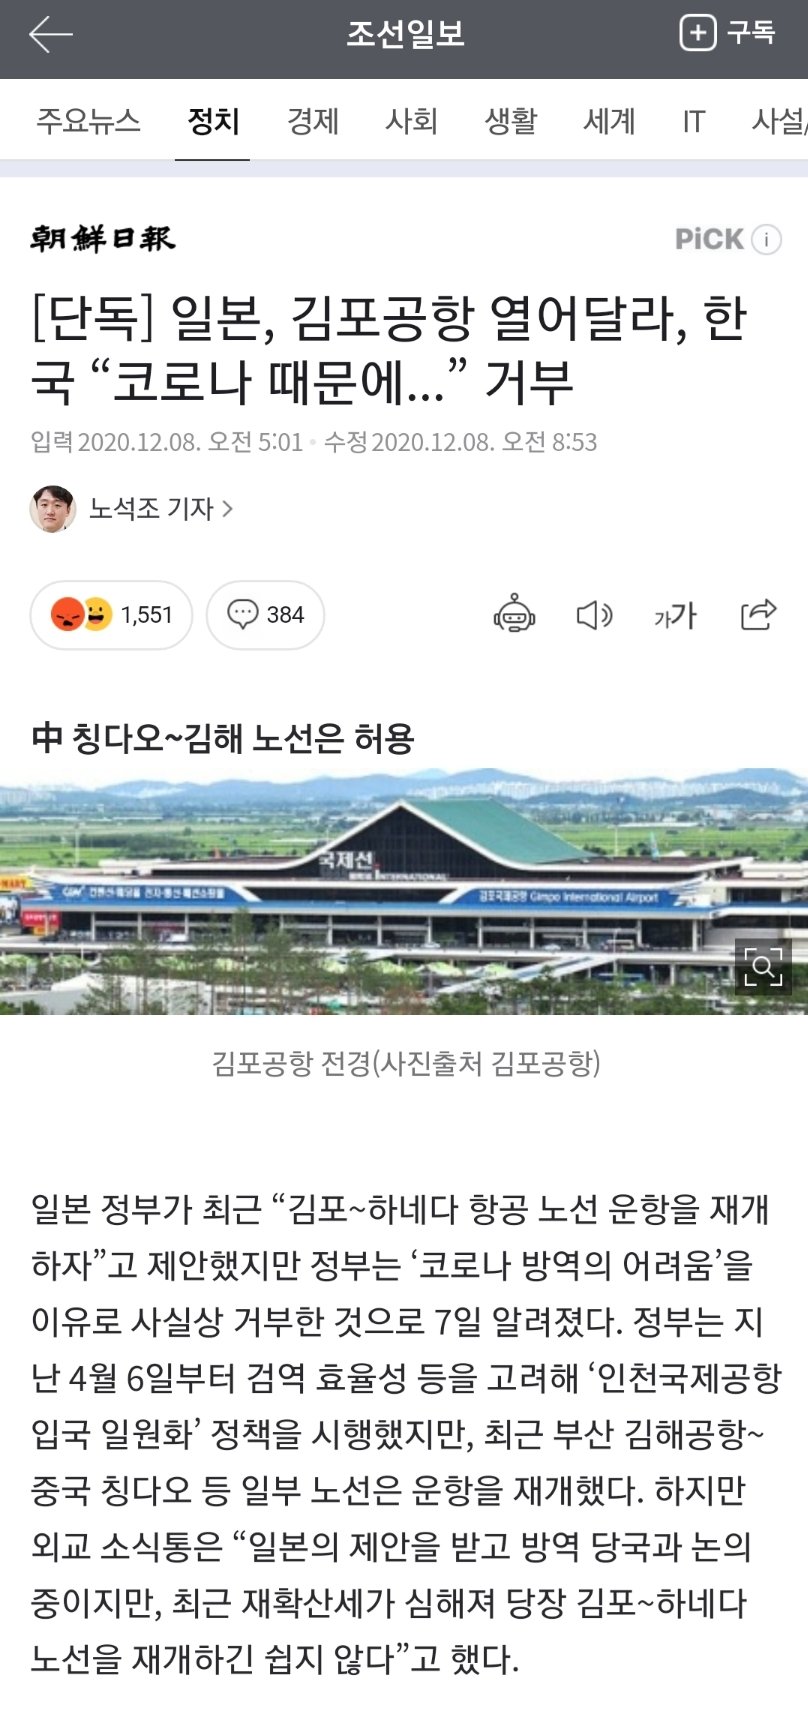 일본, 김포공항 열어달라, 한국 “코로나 때문에...” 거부